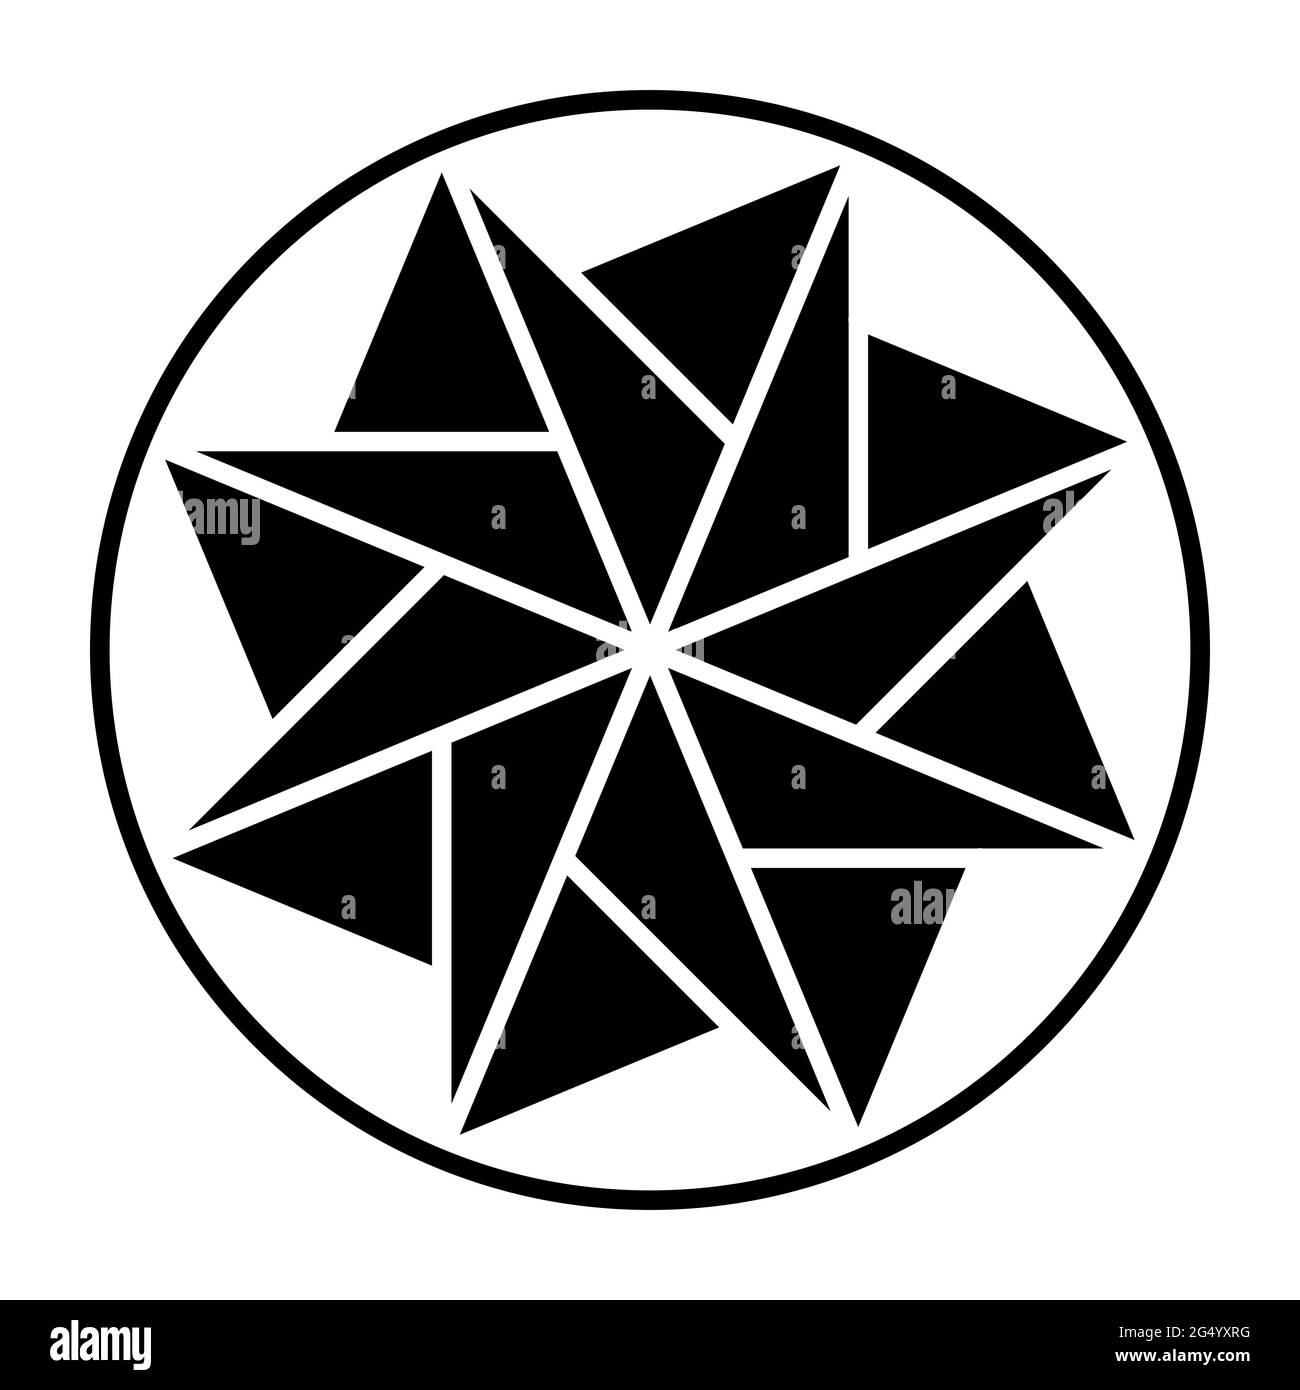 Estrella de ocho puntas hecha de triángulos, dentro de un marco circular. Patrón, formado por triángulos dispuestos simétricos. Mandala y símbolo. Foto de stock